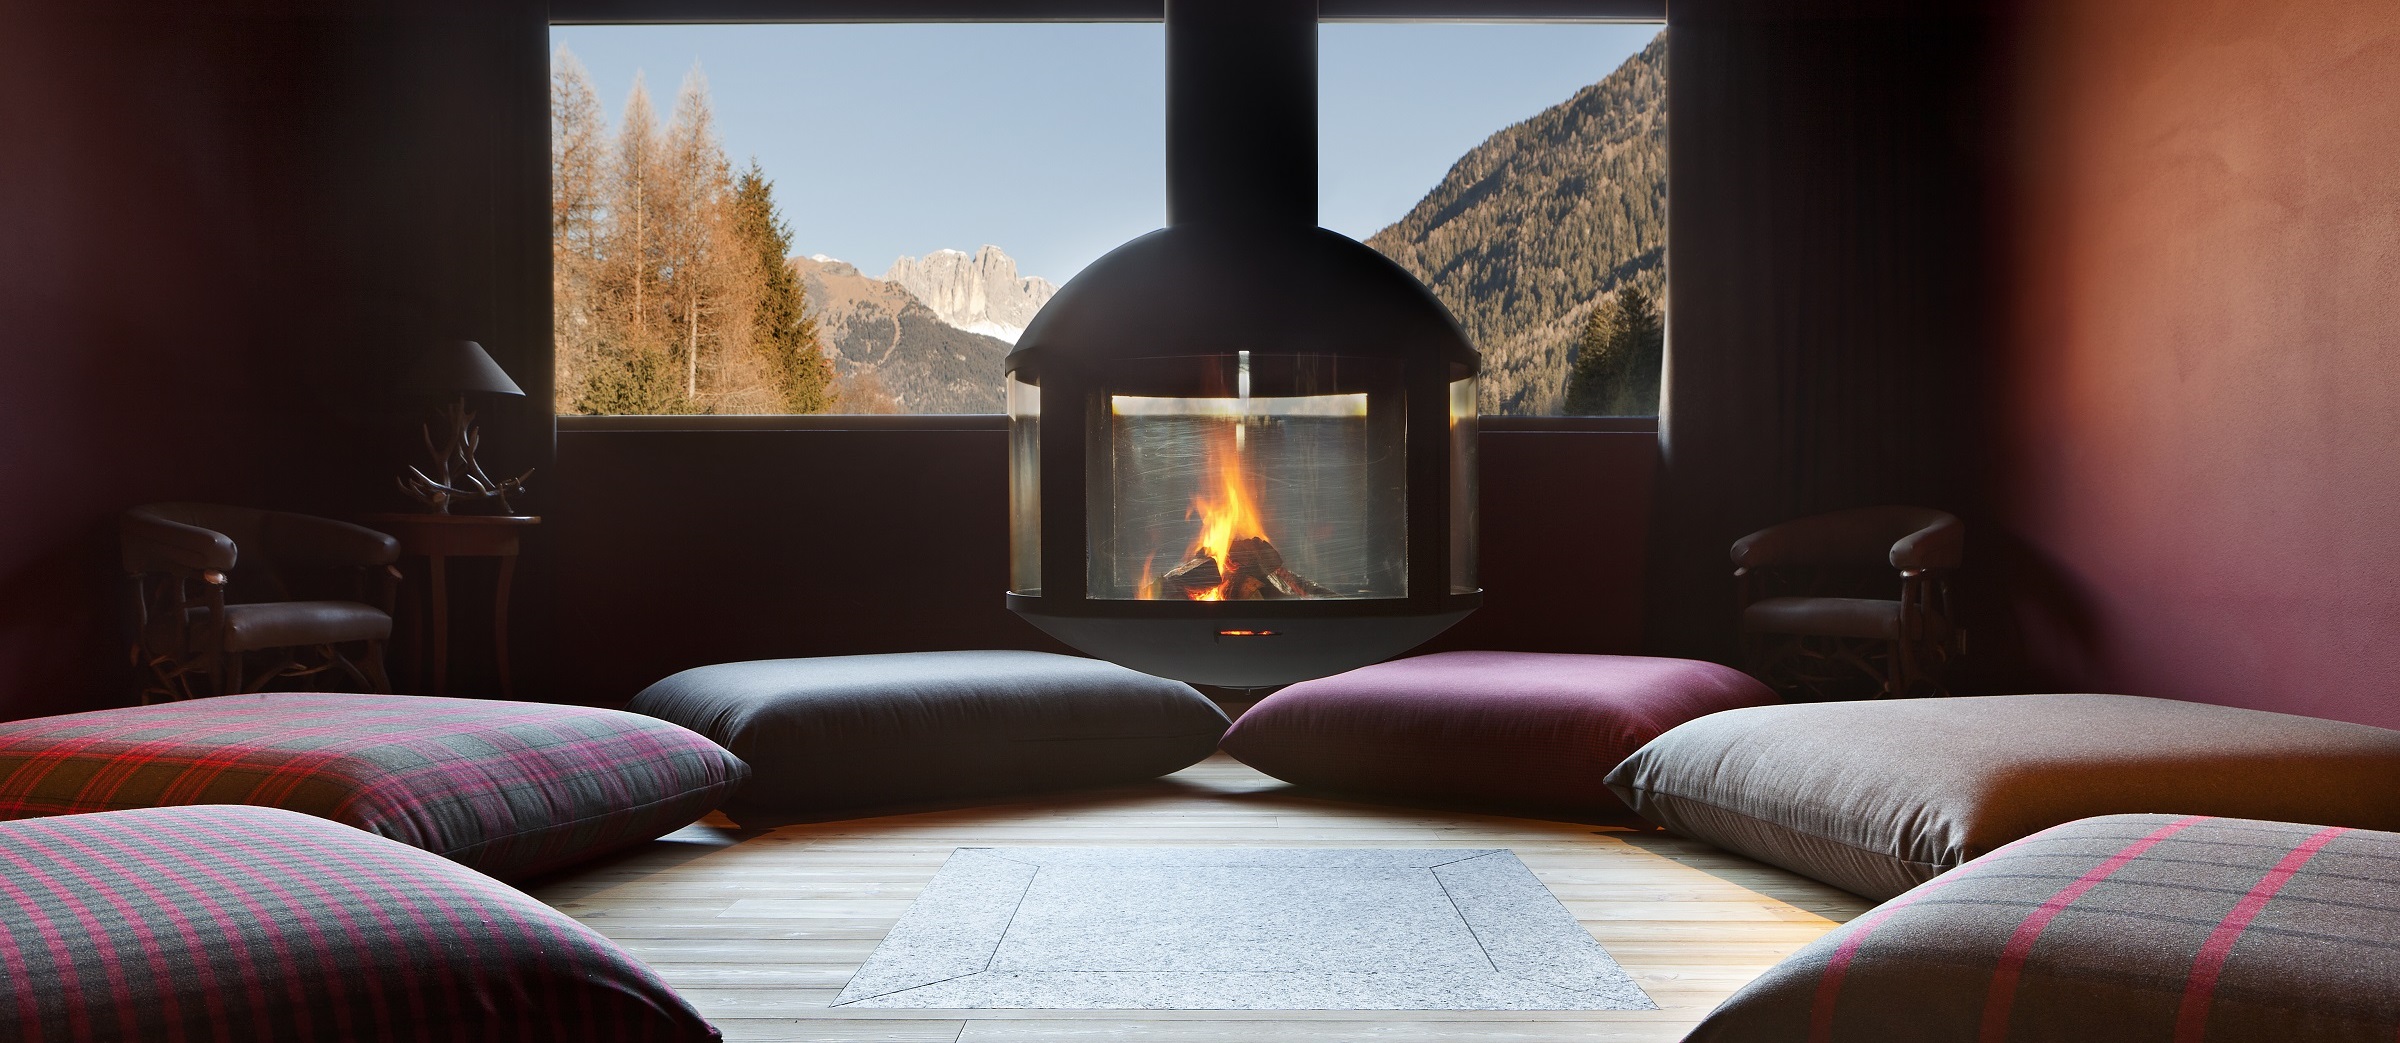 Alpine Wellness im Trentino: Spa mit Aussicht und heilende Thermalquellen